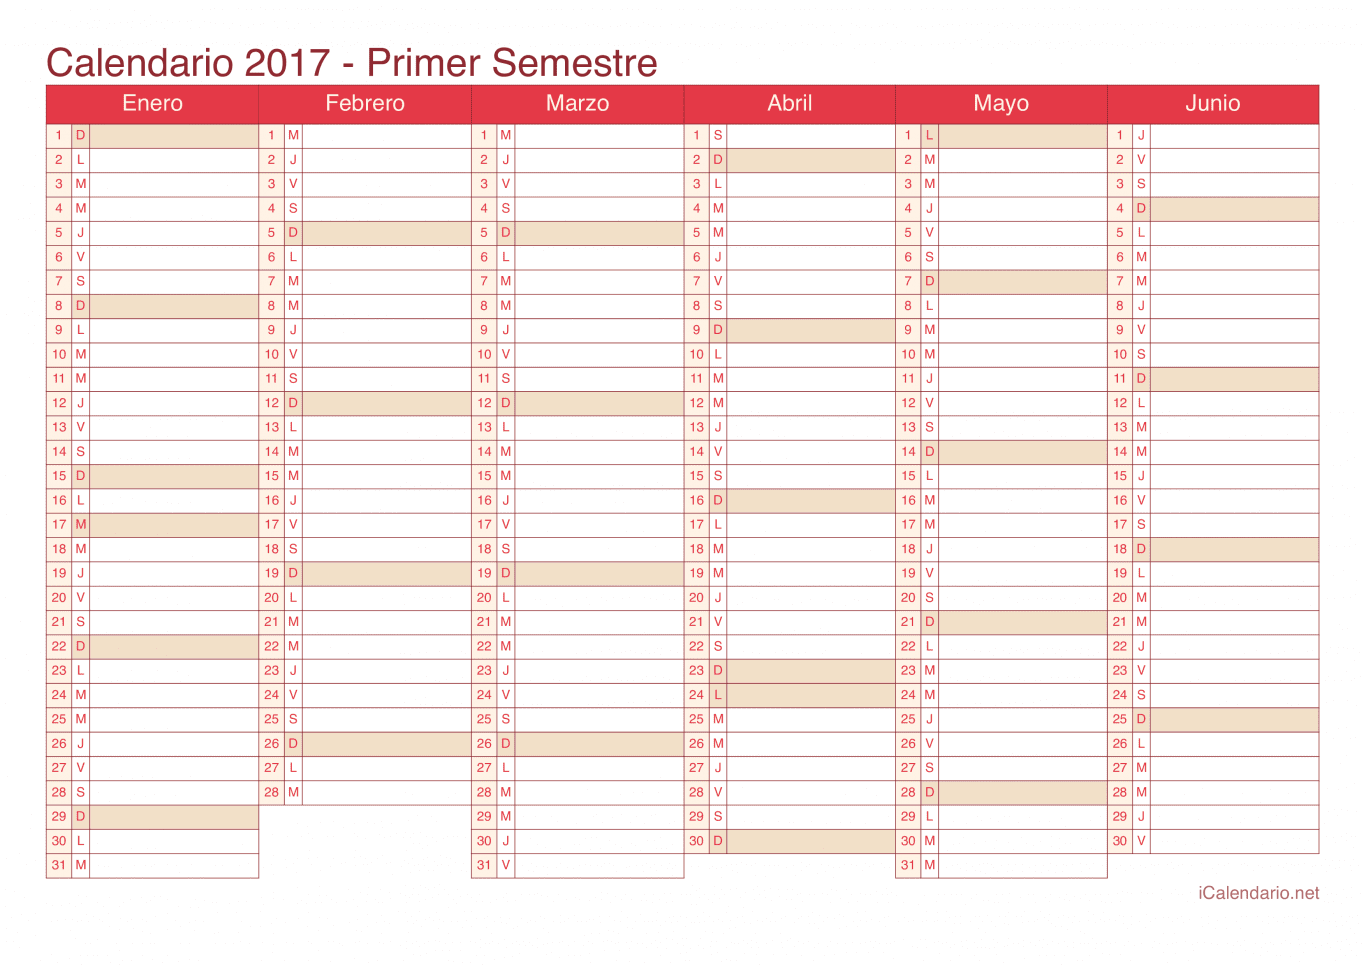 Calendario por semestre 2017 - Cherry